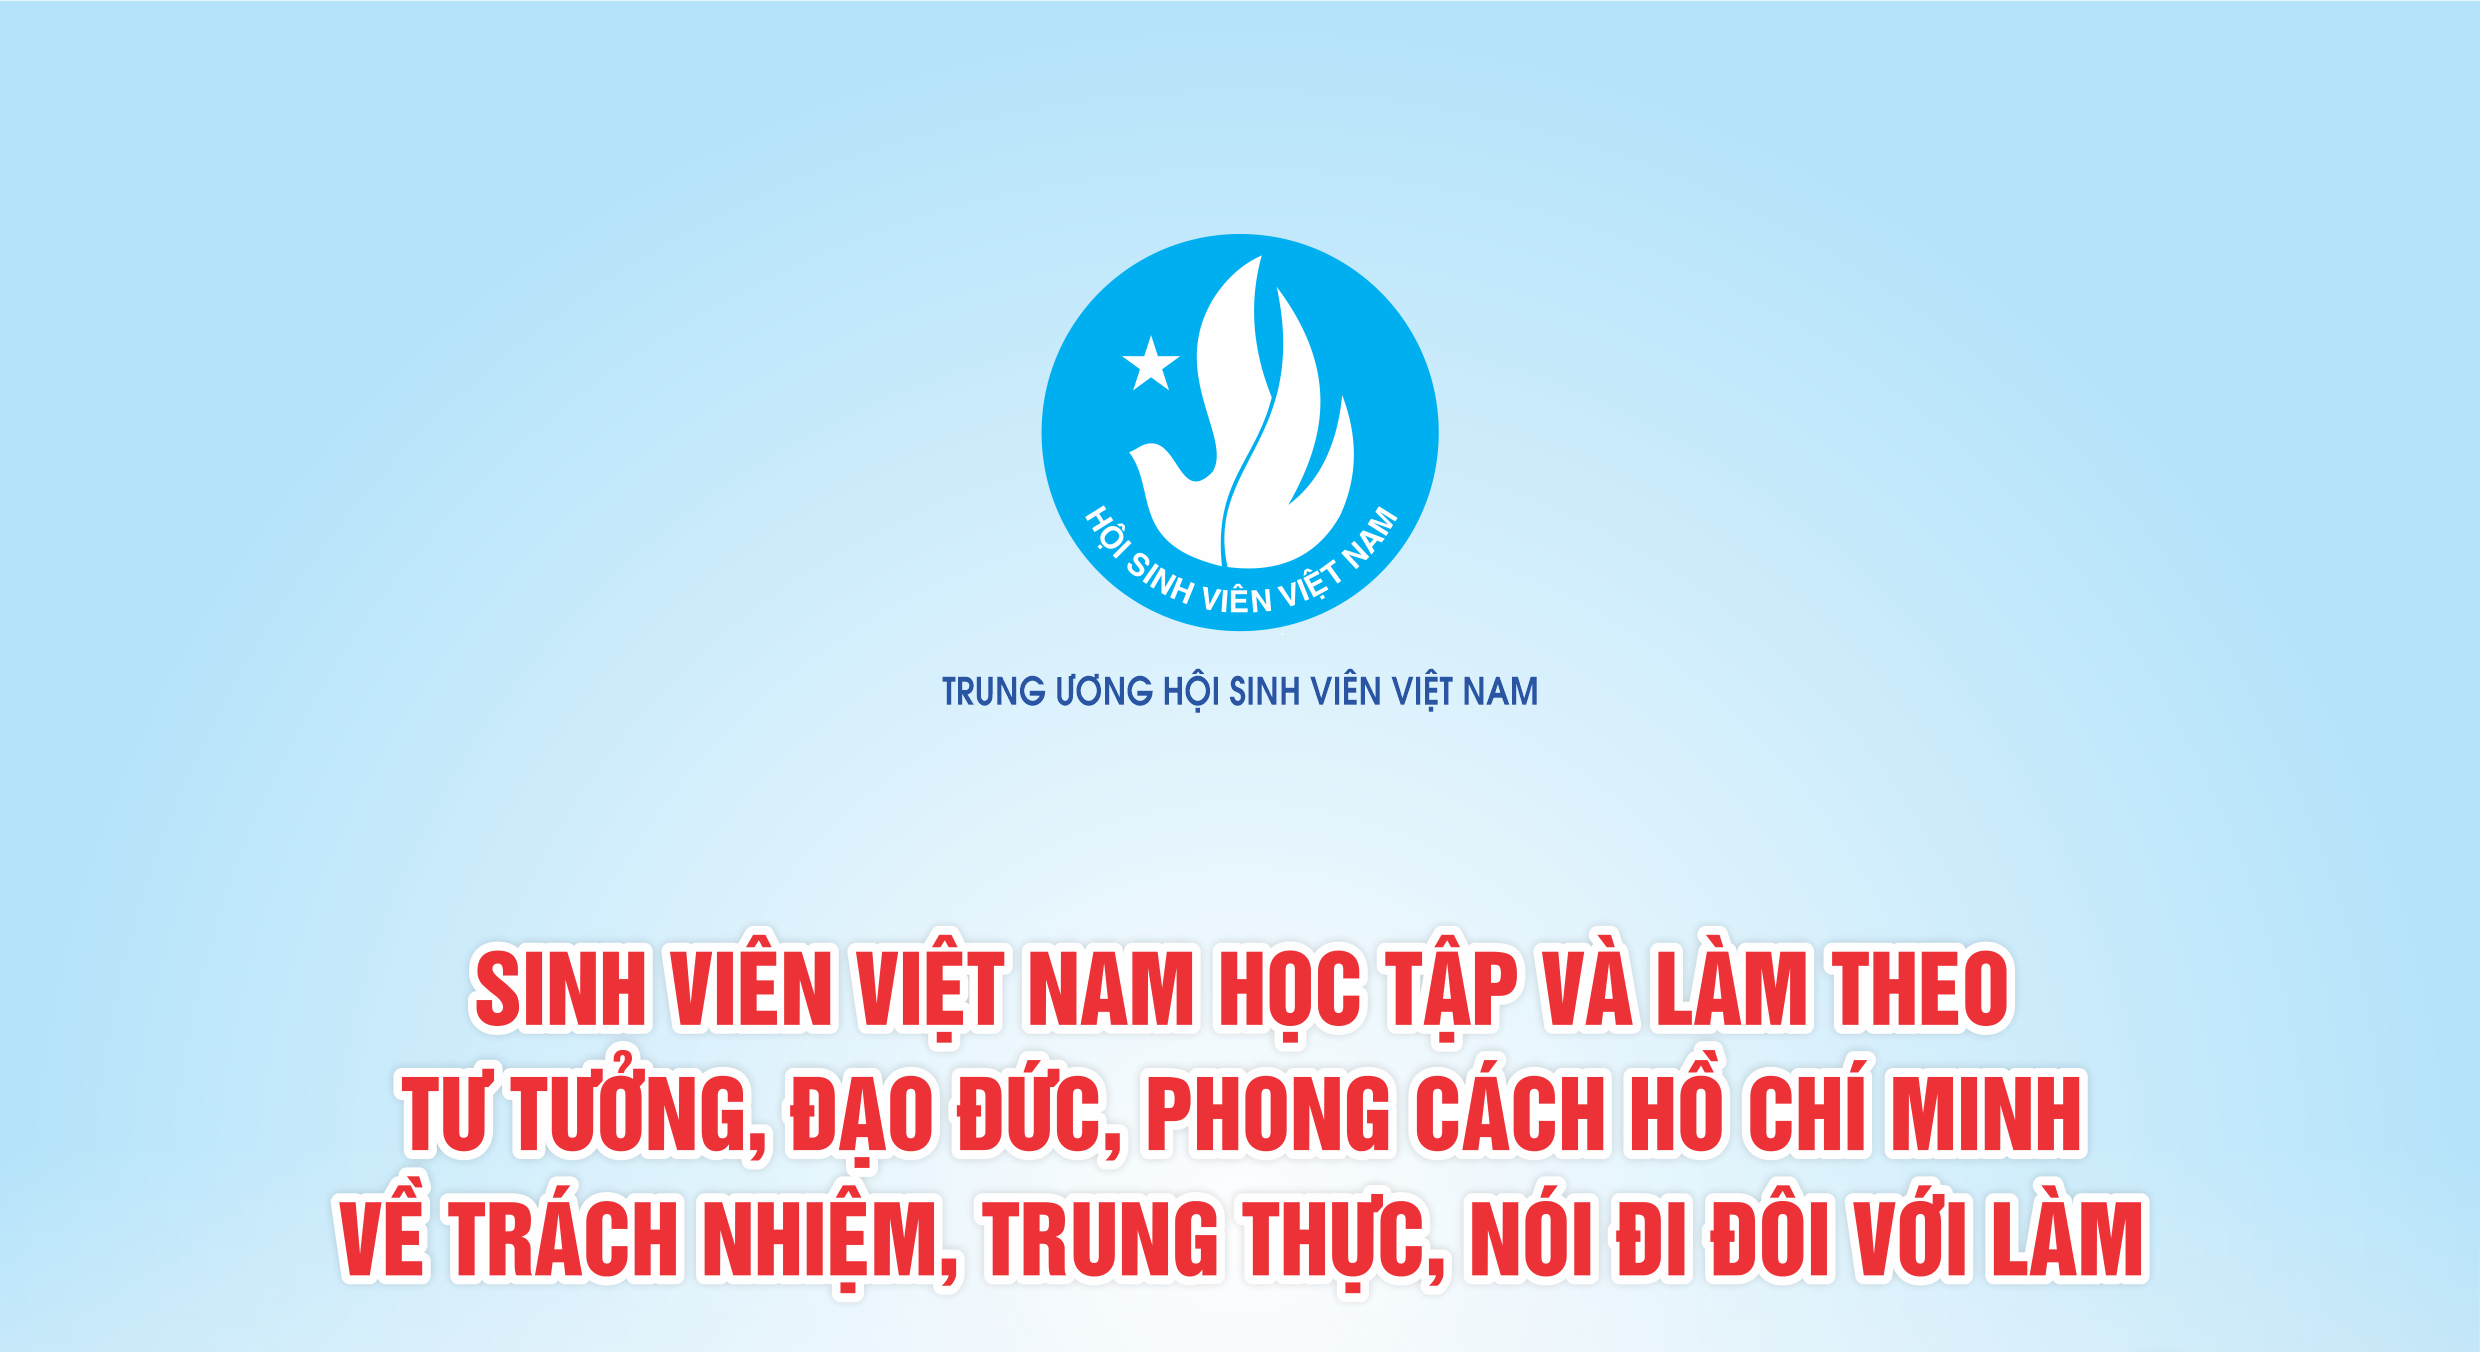 Bộ sản phẩm truyền thông giới thiệu tư tưởng, đạo đức, phong cách Hồ Chí Minh